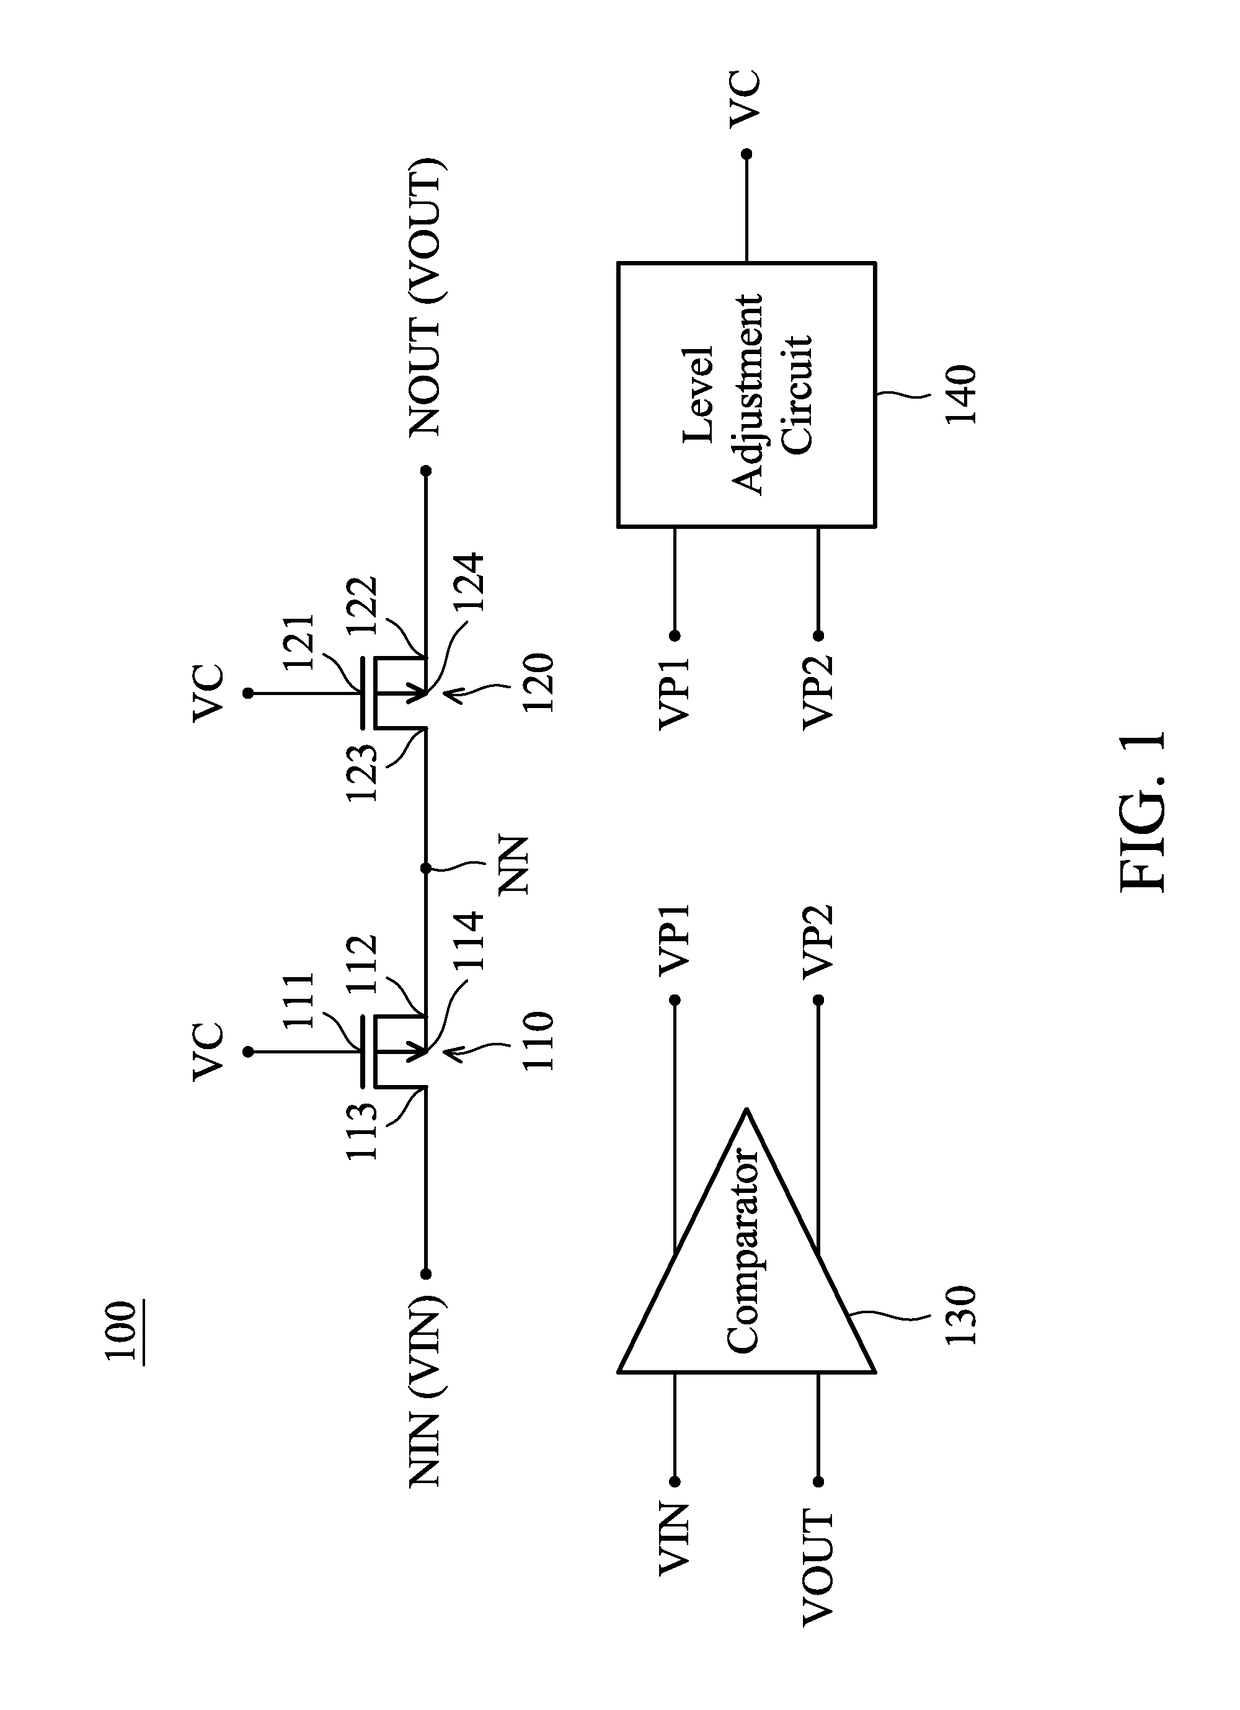 Low-voltage-drop rectifier circuit